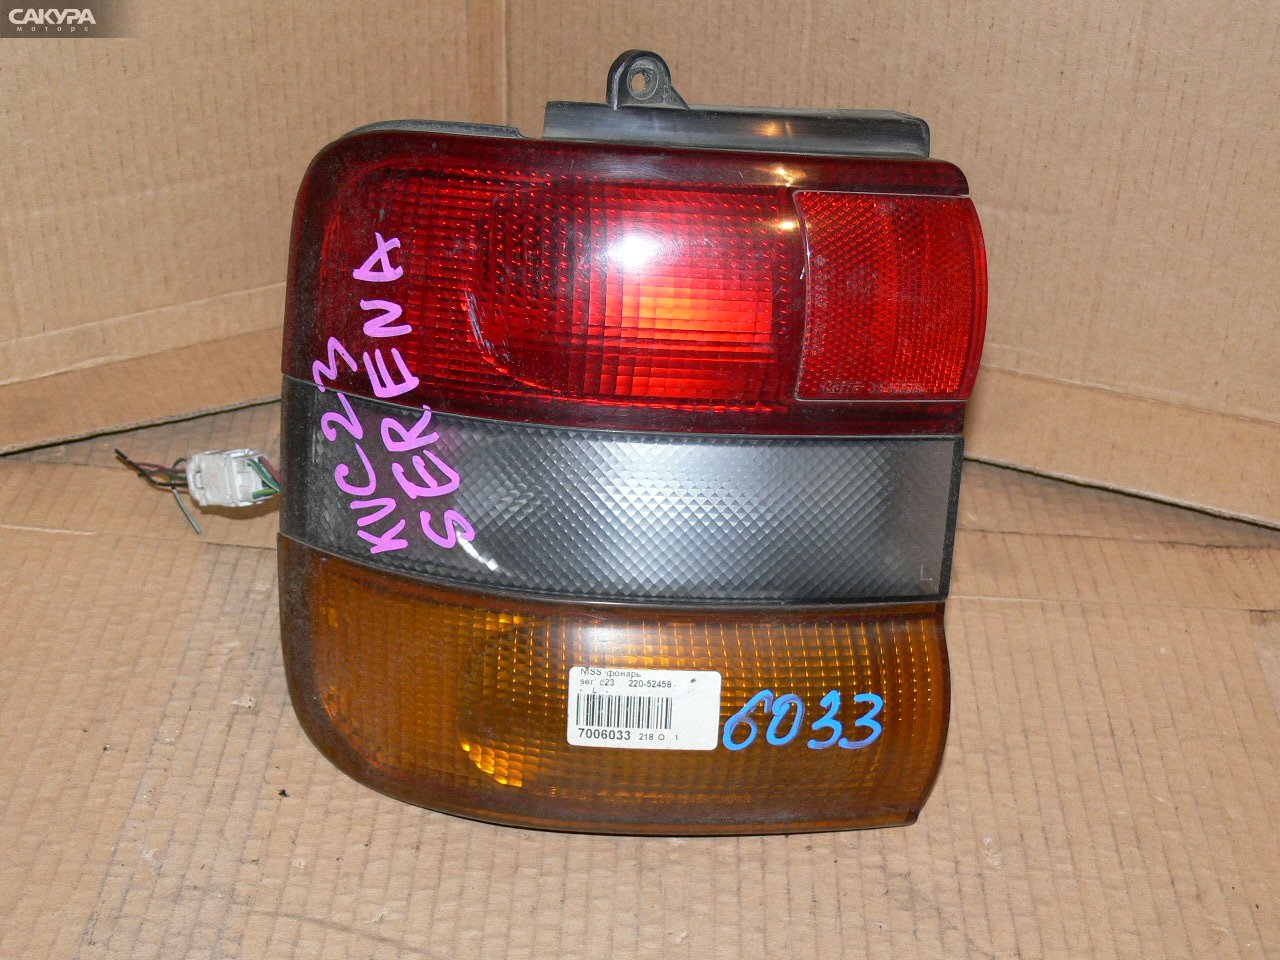 Фонарь стоп-сигнала левый Nissan Serena KBC23 220-52458: купить в Сакура Иркутск.